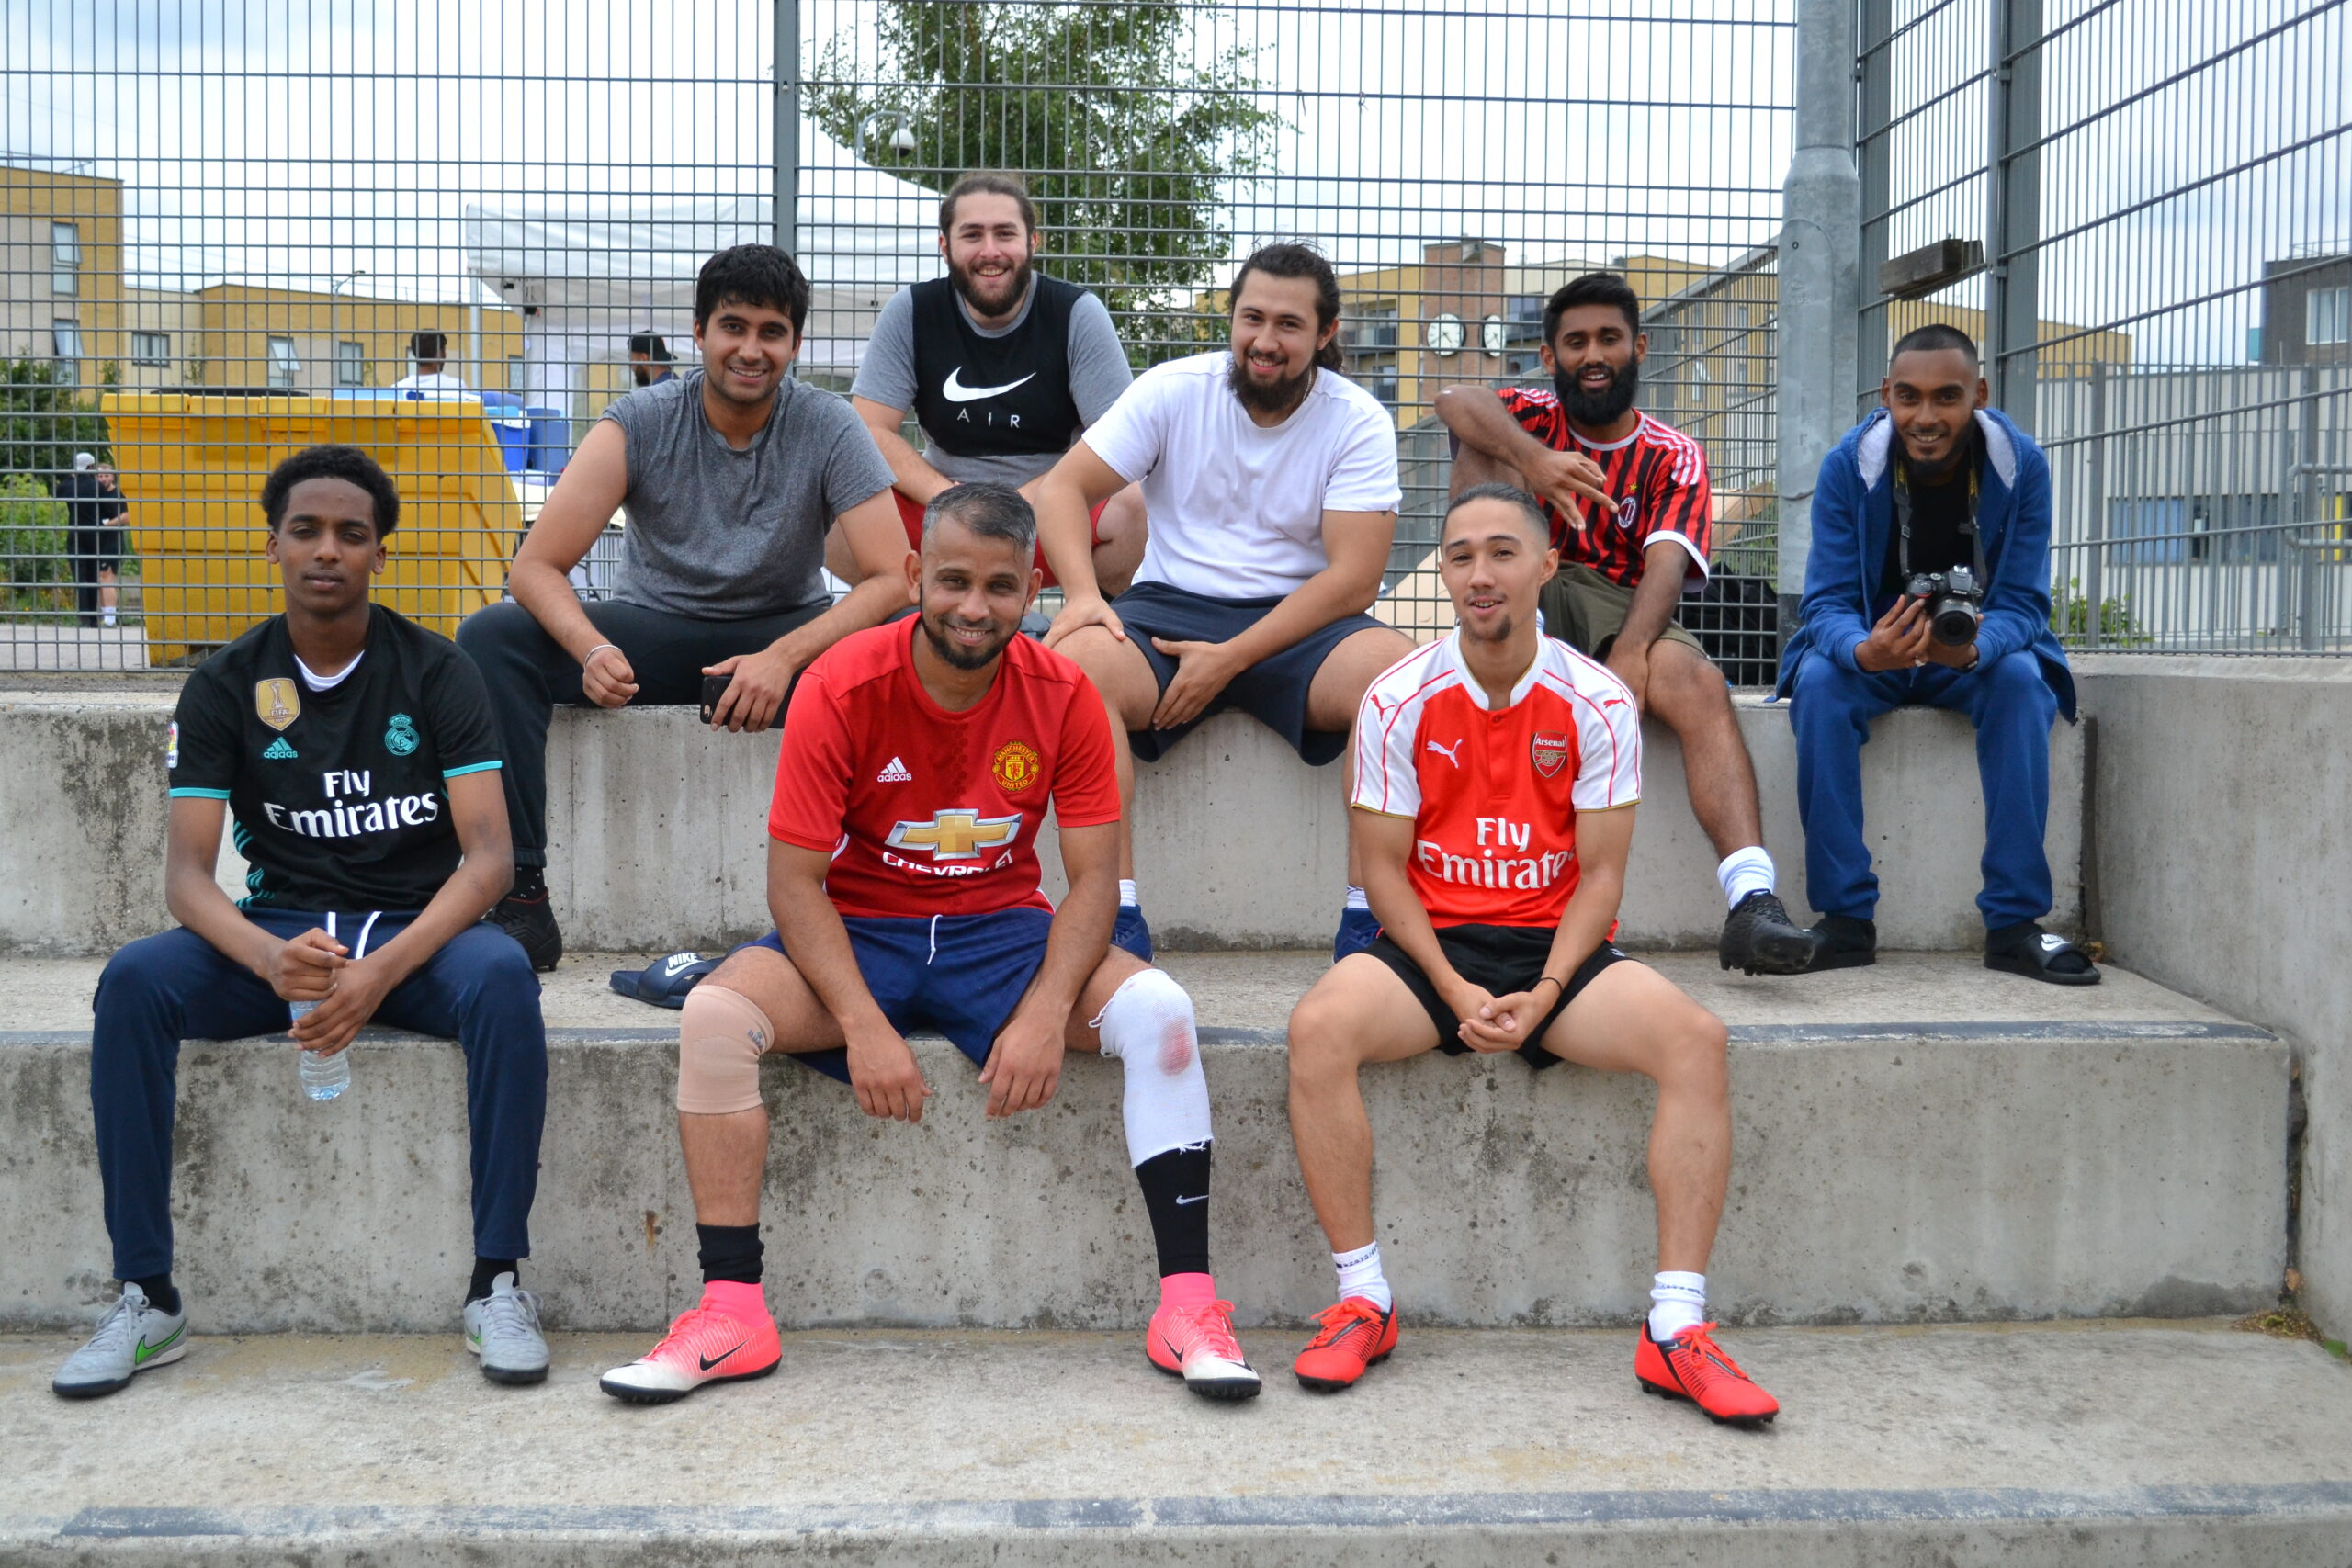 Hikmah Social – Building Brotherhood Through Football